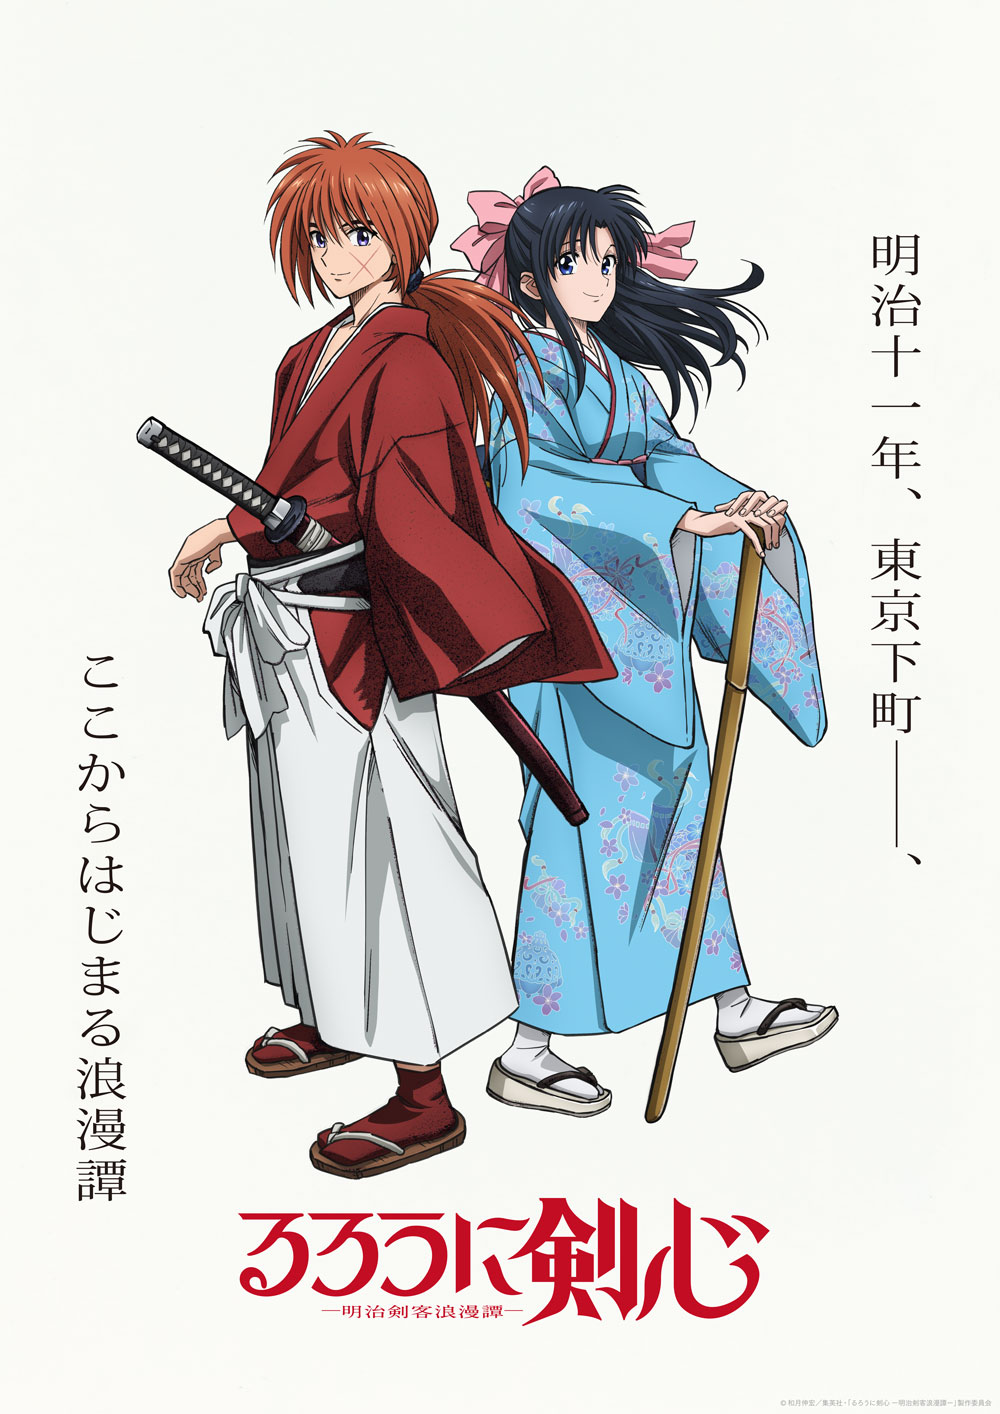 Rurouni Kenshin 1996 to 2023 Comparison